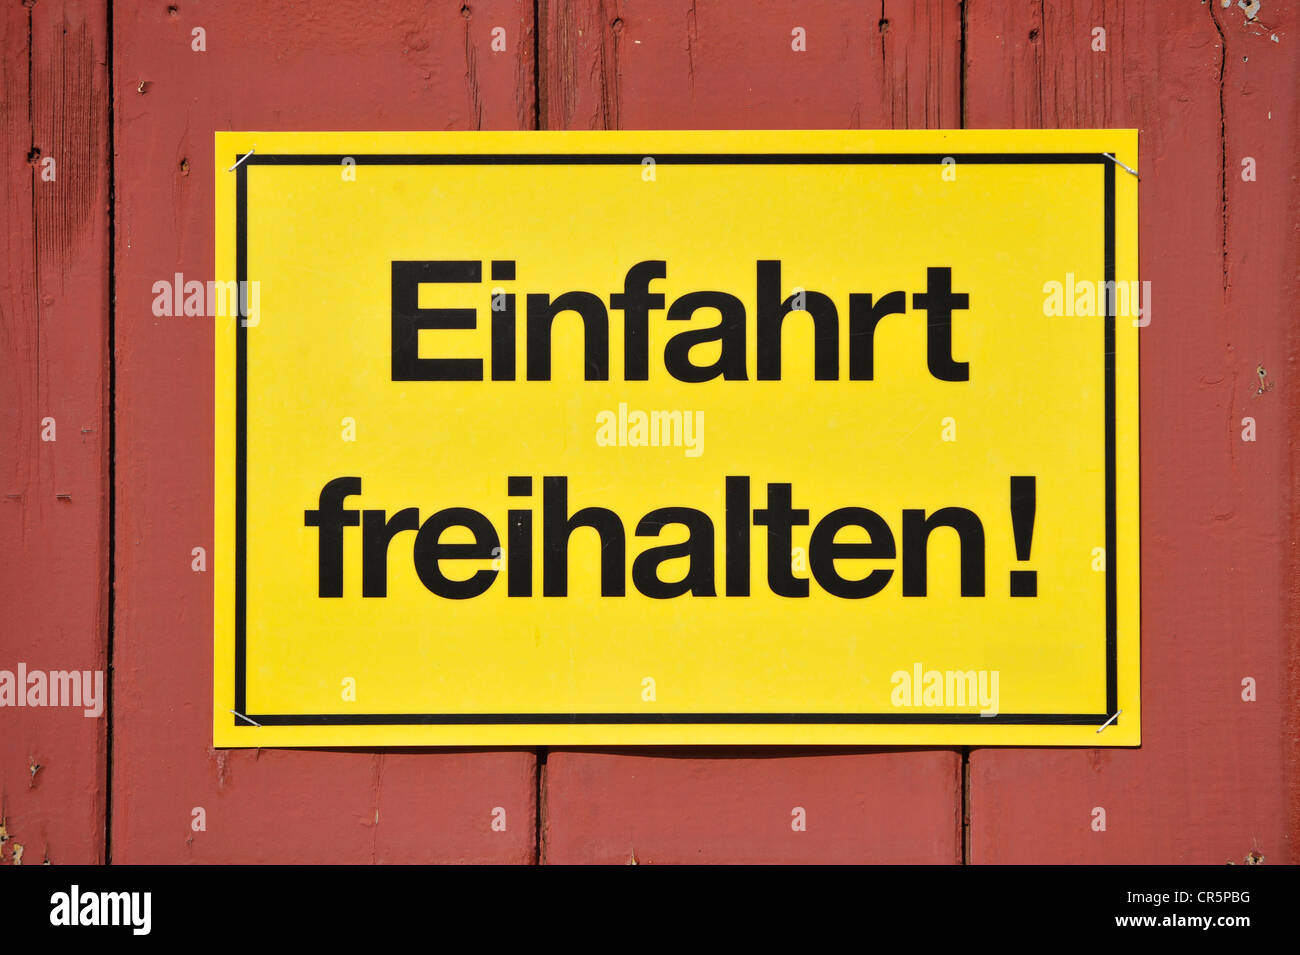 Zeichen, Bibliotheksgebäudes Freihalten! Deutsch für Keep Eingang klar, gelb auf einem roten Holztor, Deutschland, Europa Stockfoto